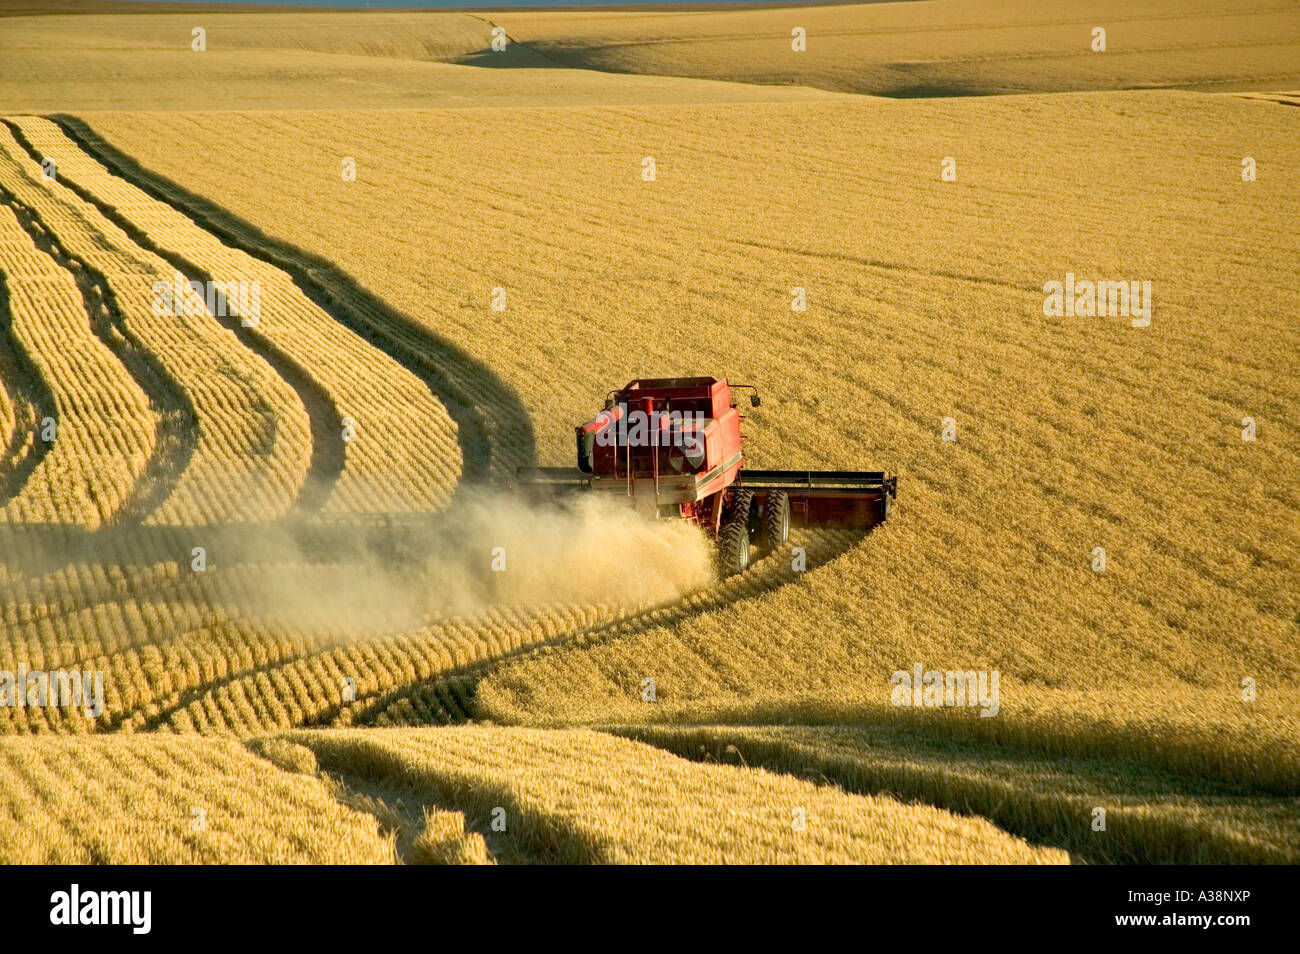 Combine harvesting wheat, Stock Photo